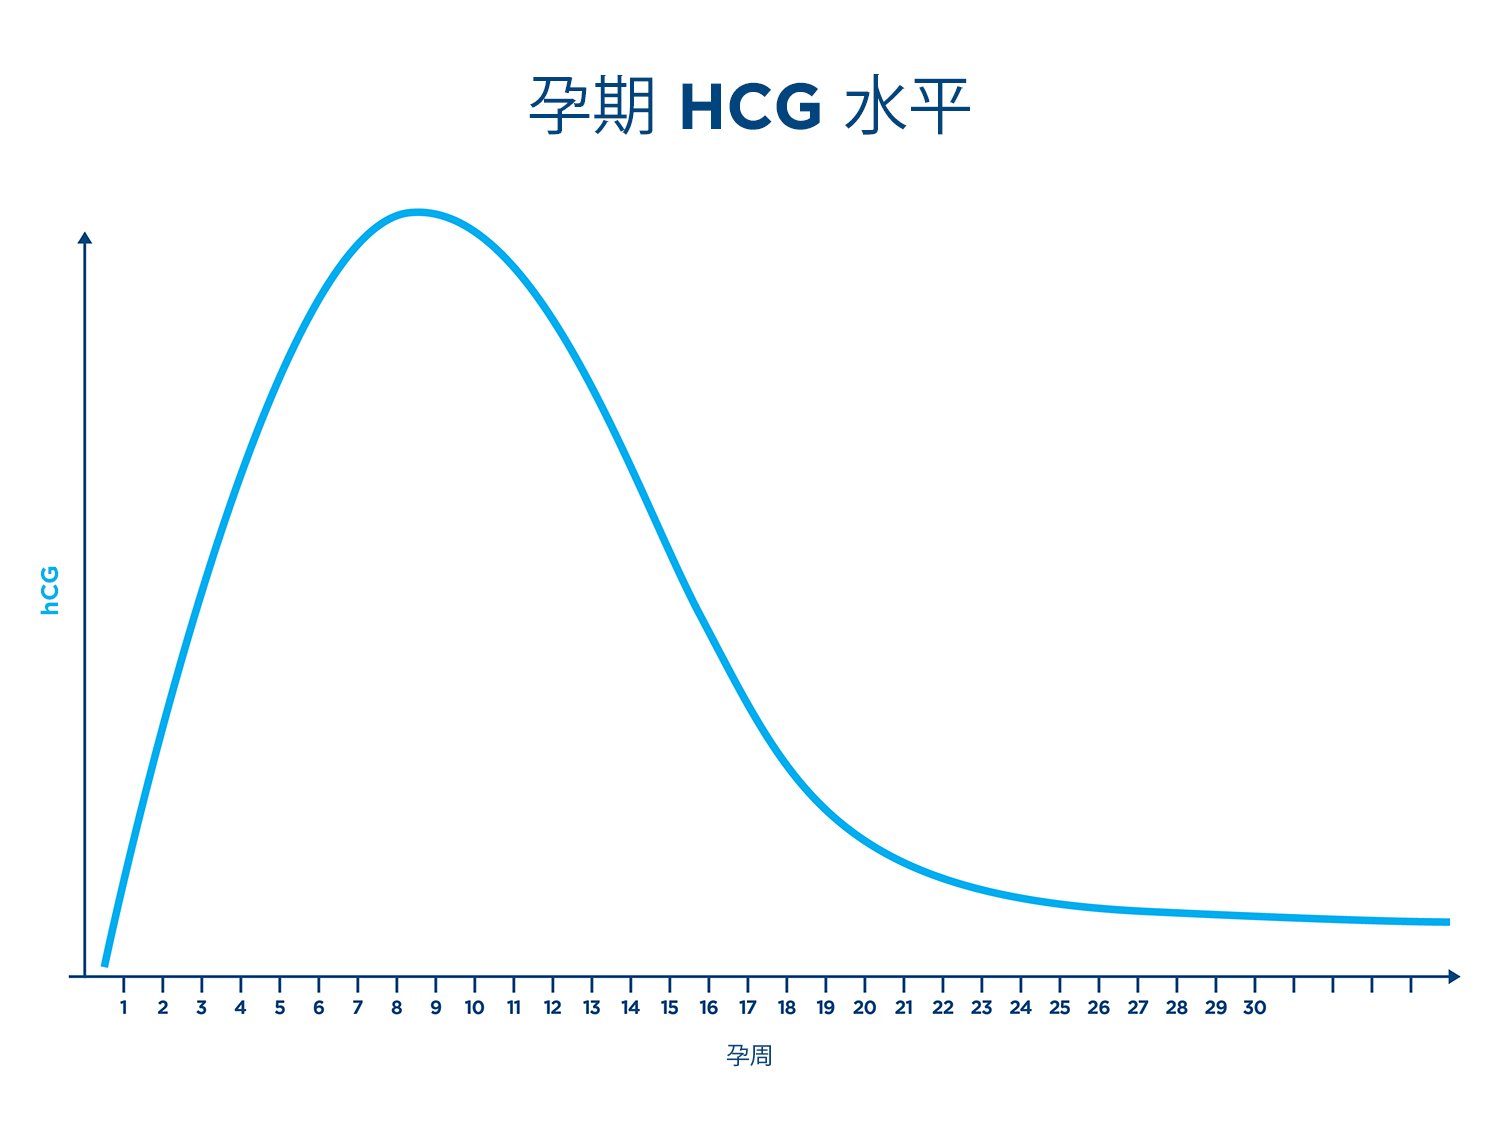 图表显示了怀孕期间的hCG水平，x轴为孕周，y轴为hCG。